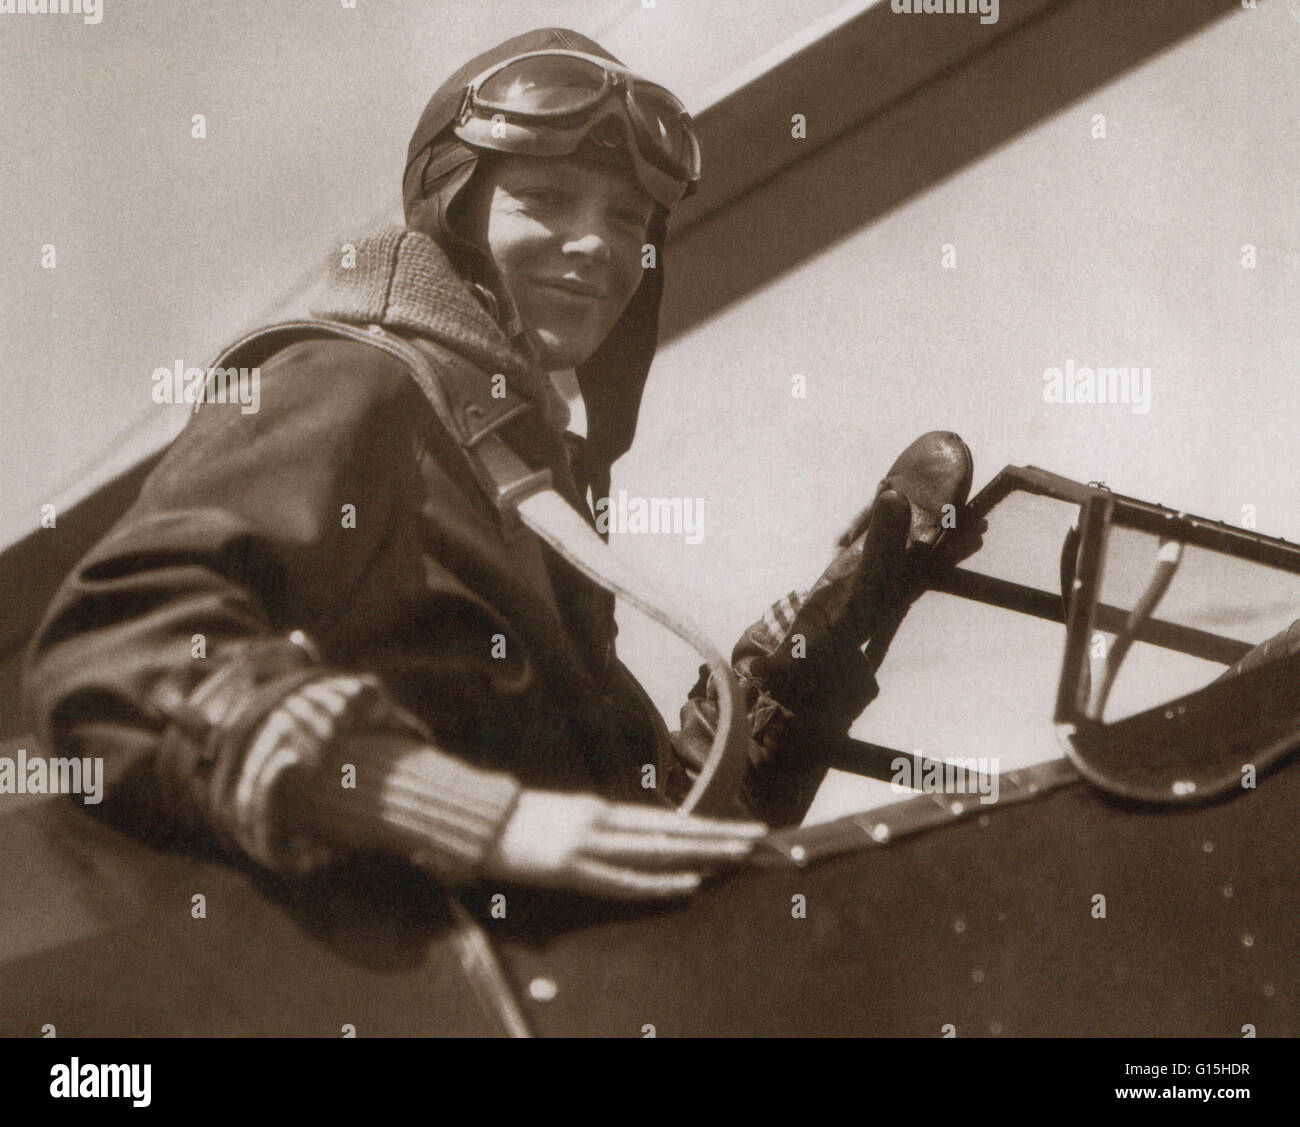 Mary Amelia Earhart (Juillet 24, 1897 - Juillet 2, 1937 disparus) a été un pionnier de l'aviation américaine. Après avoir suivi des cours de pionnier de l'aviation Neta Snook dans un Curtiss Jenny, Earhart a entrepris de briser les enregistrements de vol, brisant les records d'altitude en 1922 femmes Banque D'Images